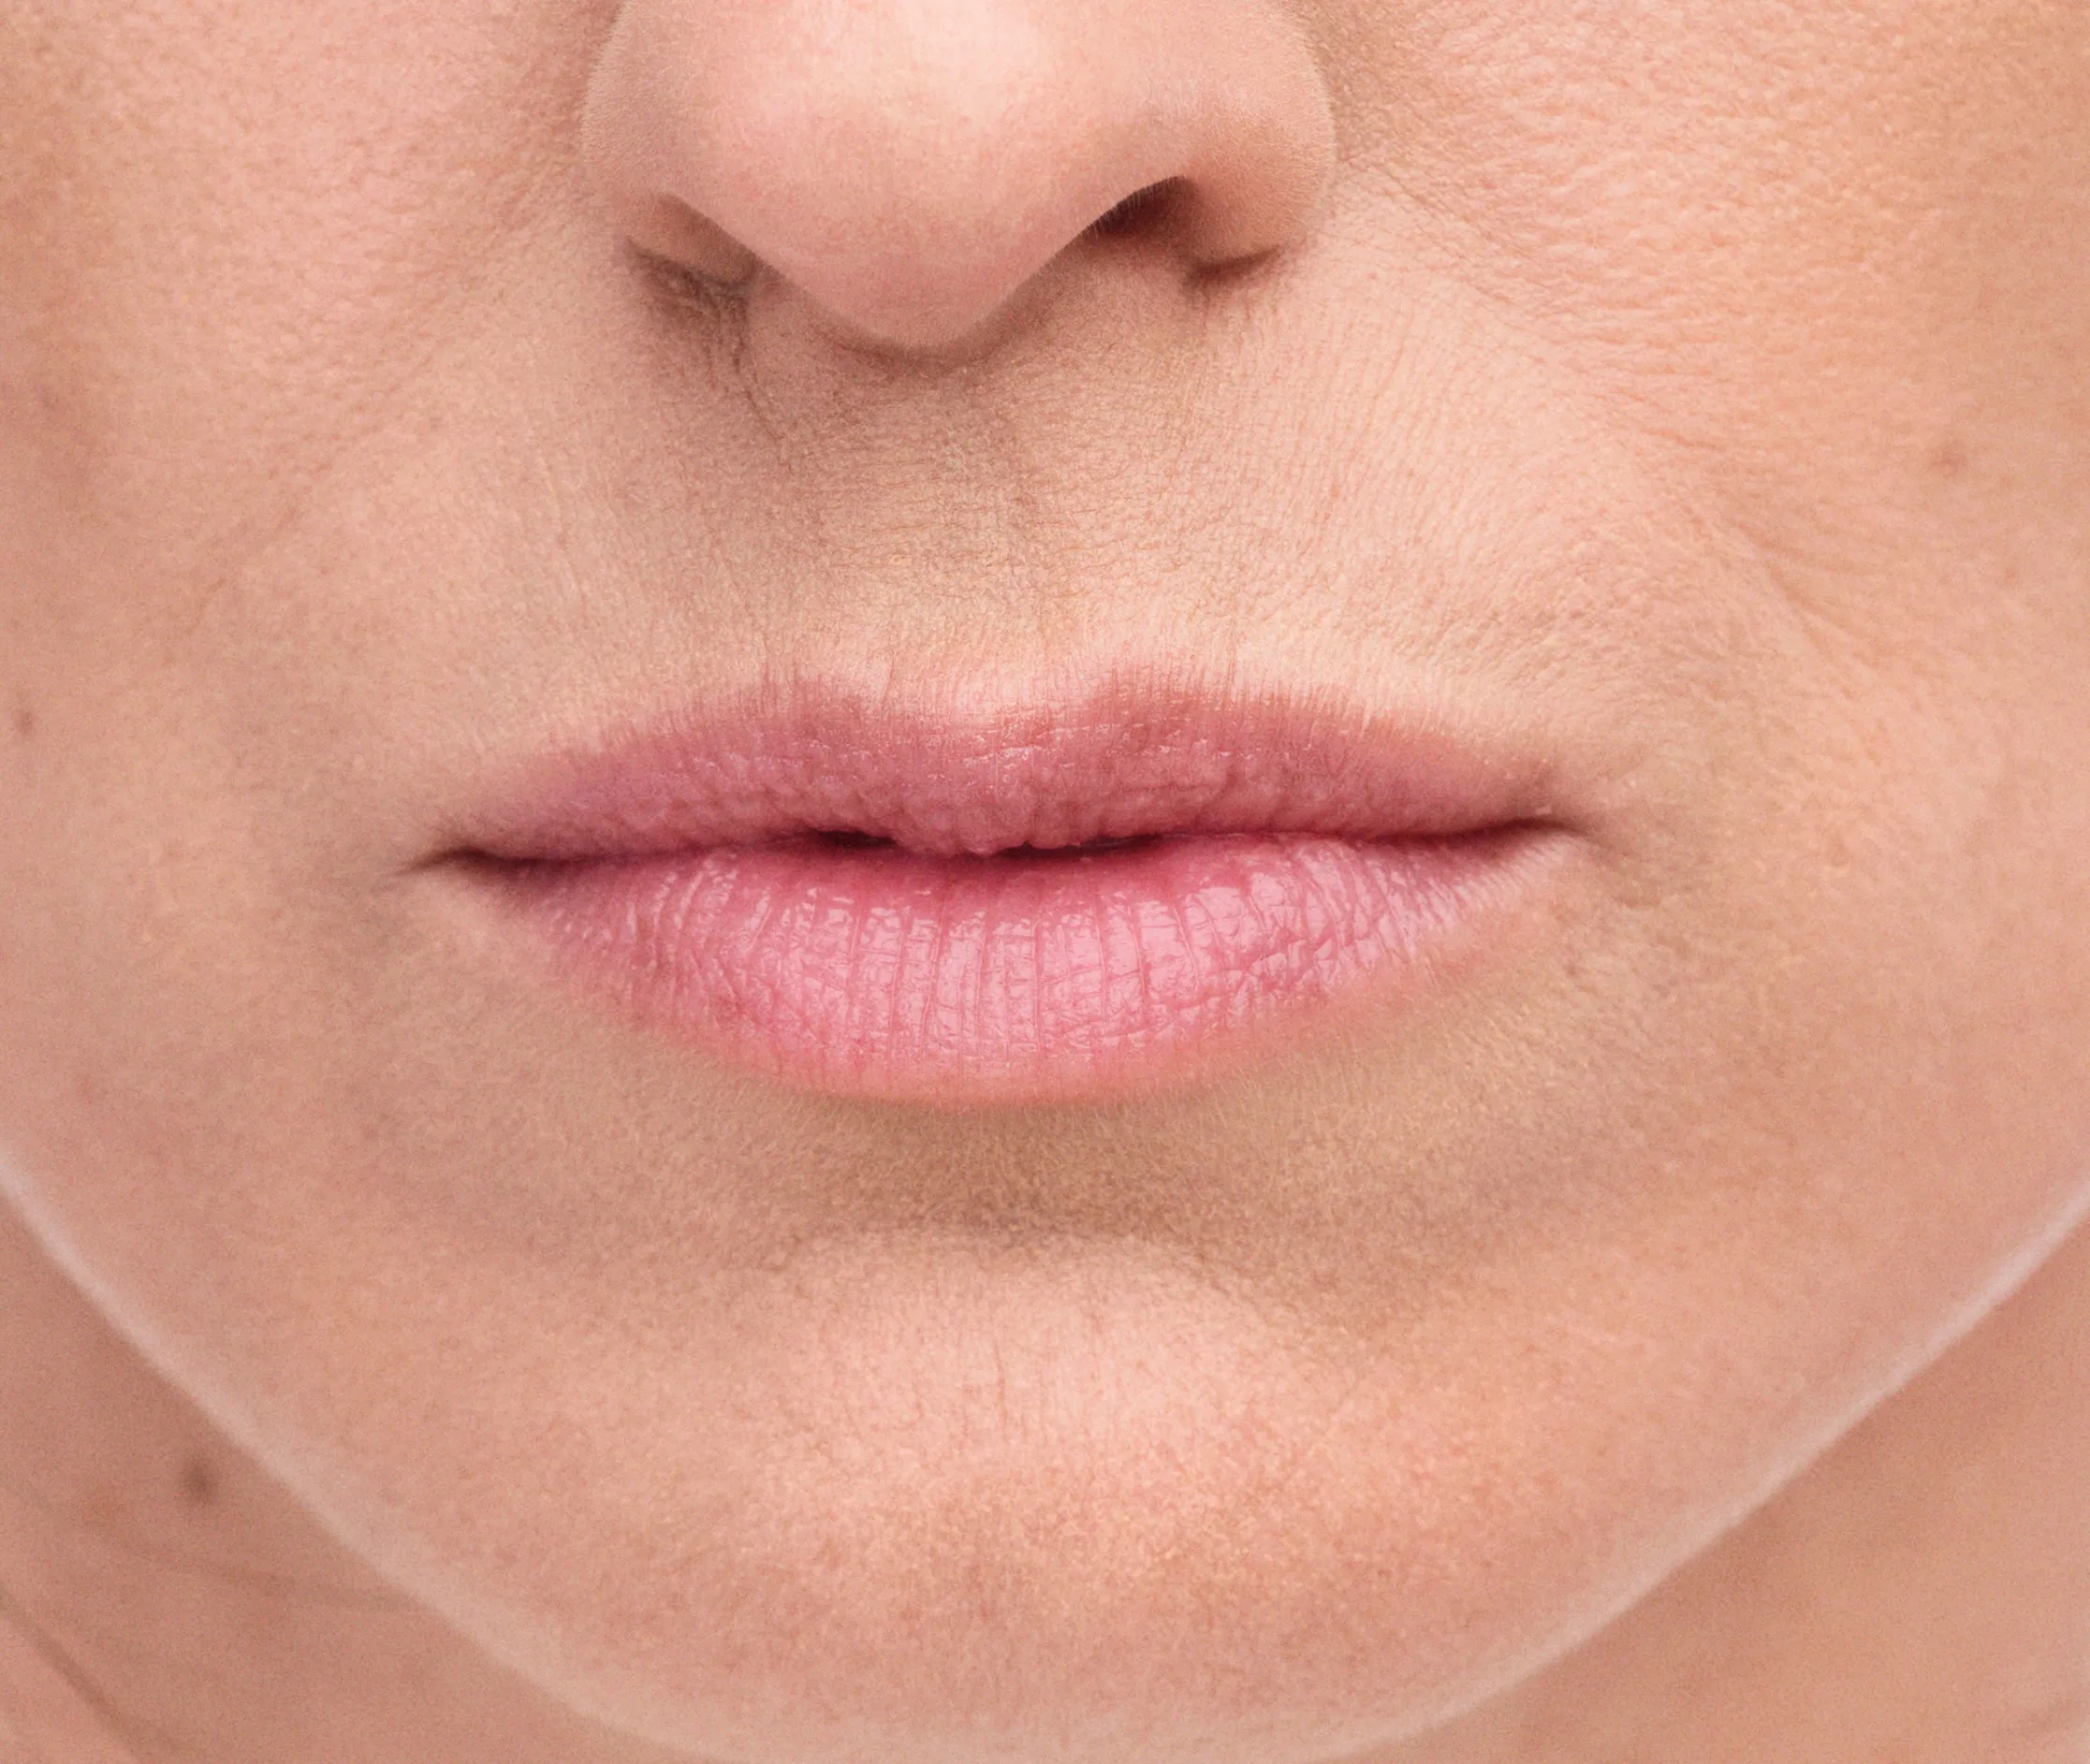 lip filler treatment for wrinkles Calgary